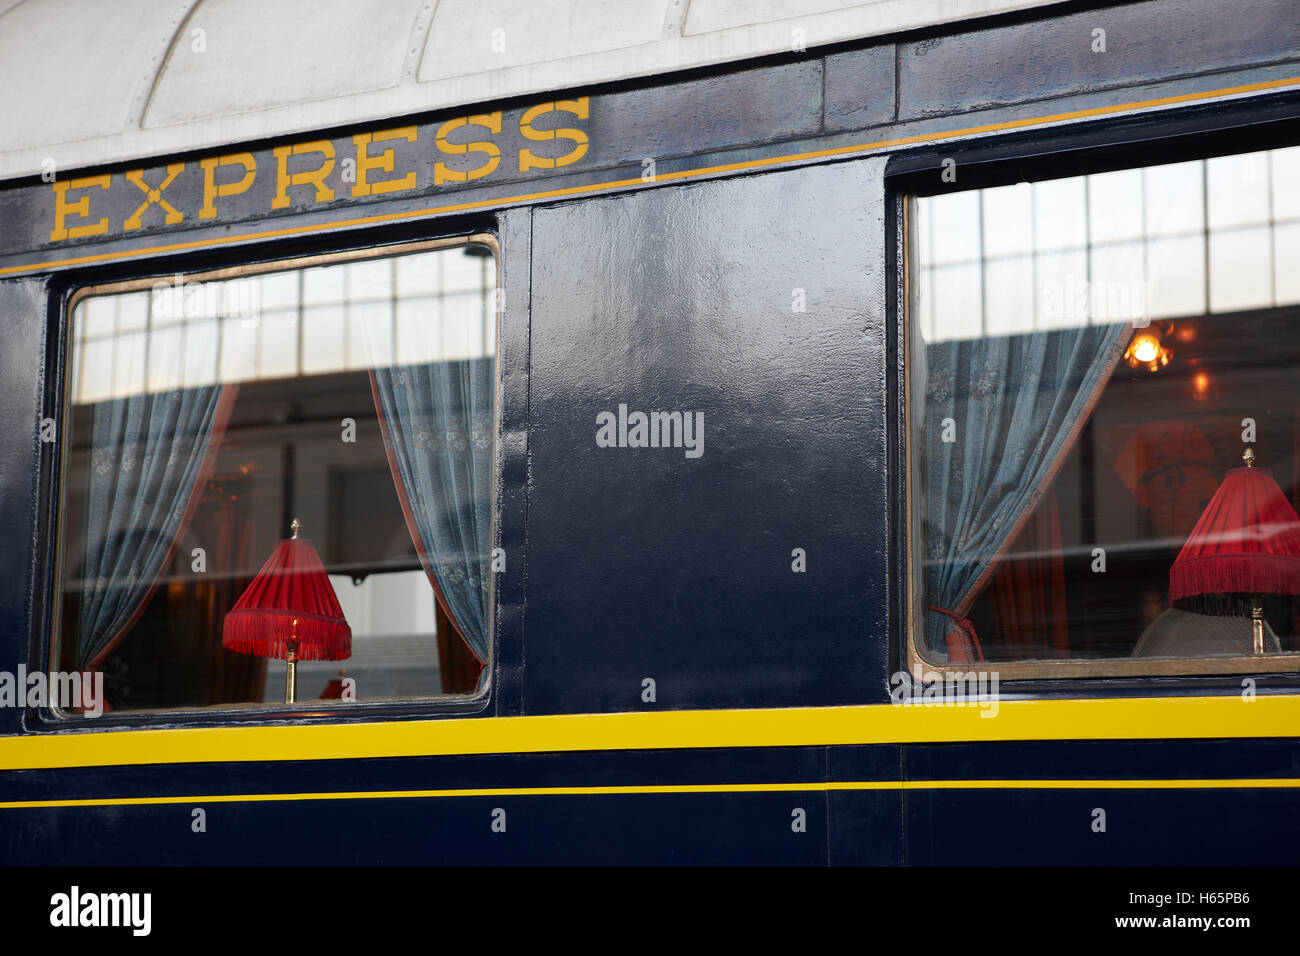 Antique express treno carro con windows e lampade. Posizione orizzontale Foto Stock